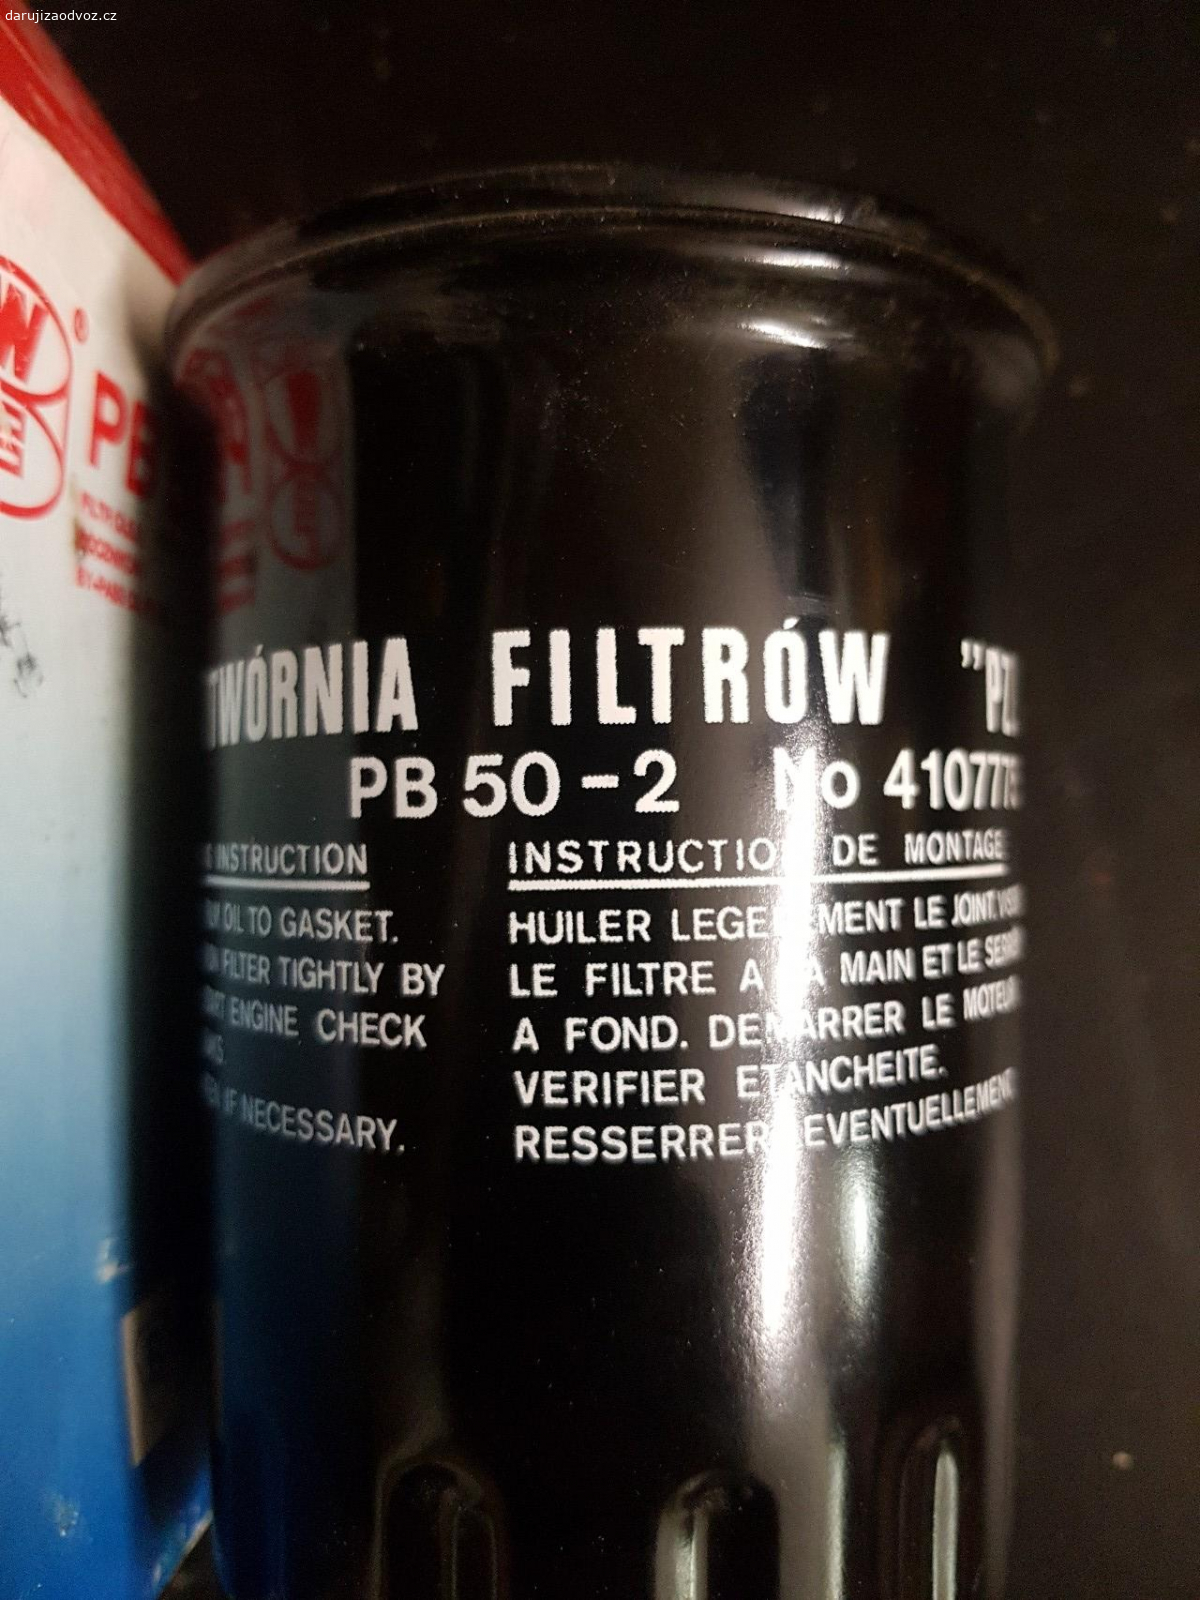 palivovy filtr pb 50-2. pro Polski fiat 125p. nepouzity v krabici